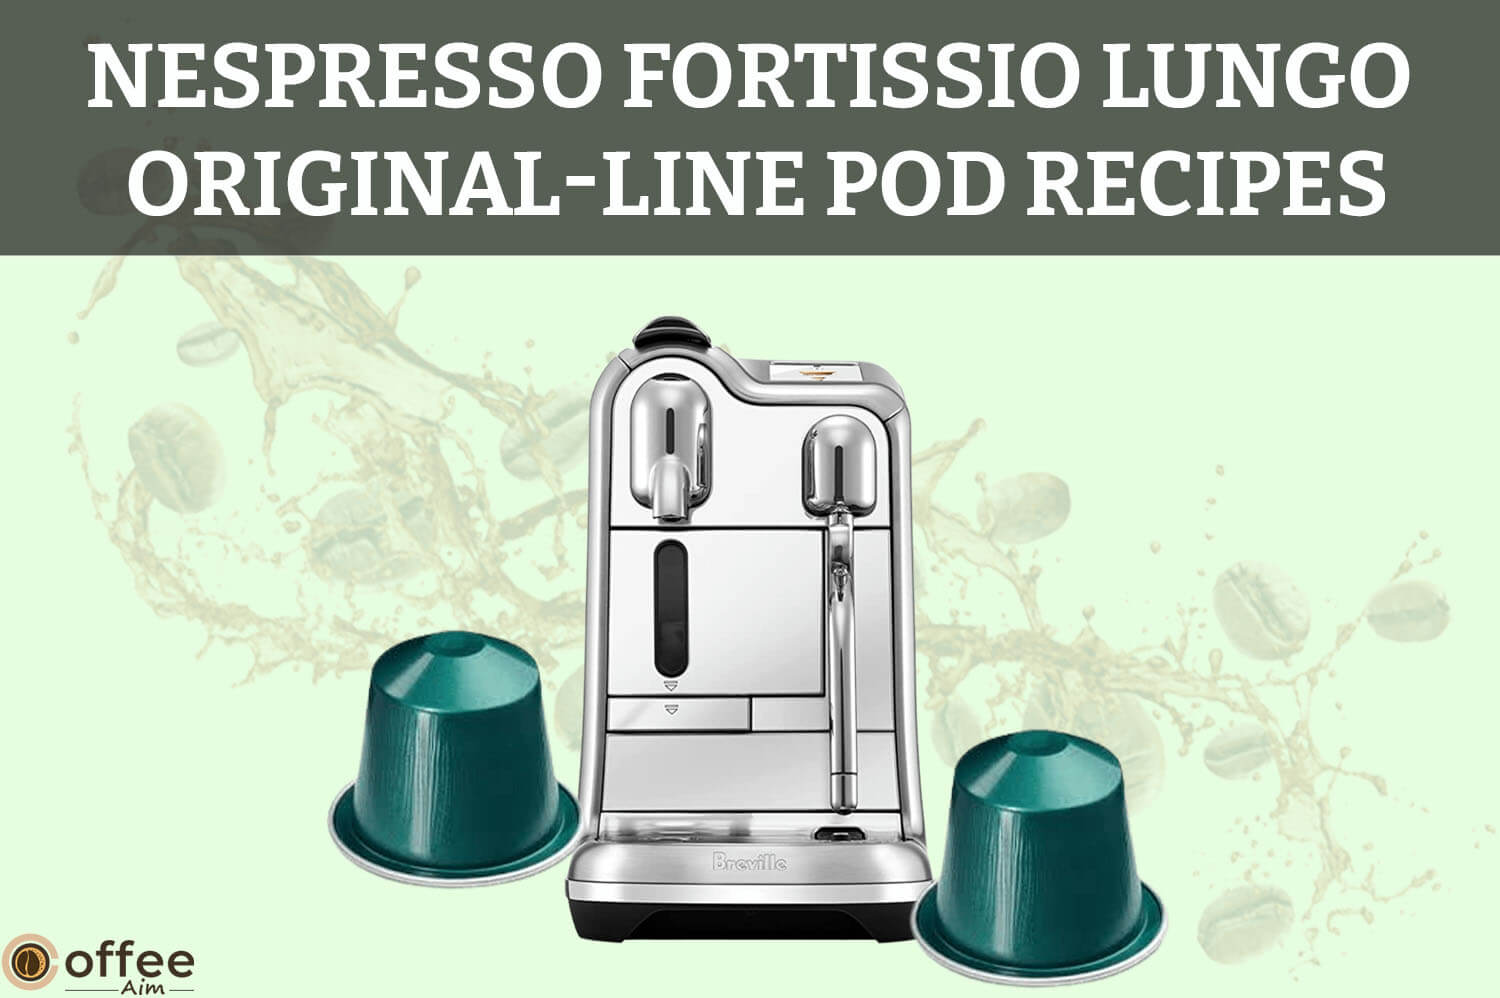 Nespresso-Fortissio-Lungo-Original-Line-Pod-Recipes